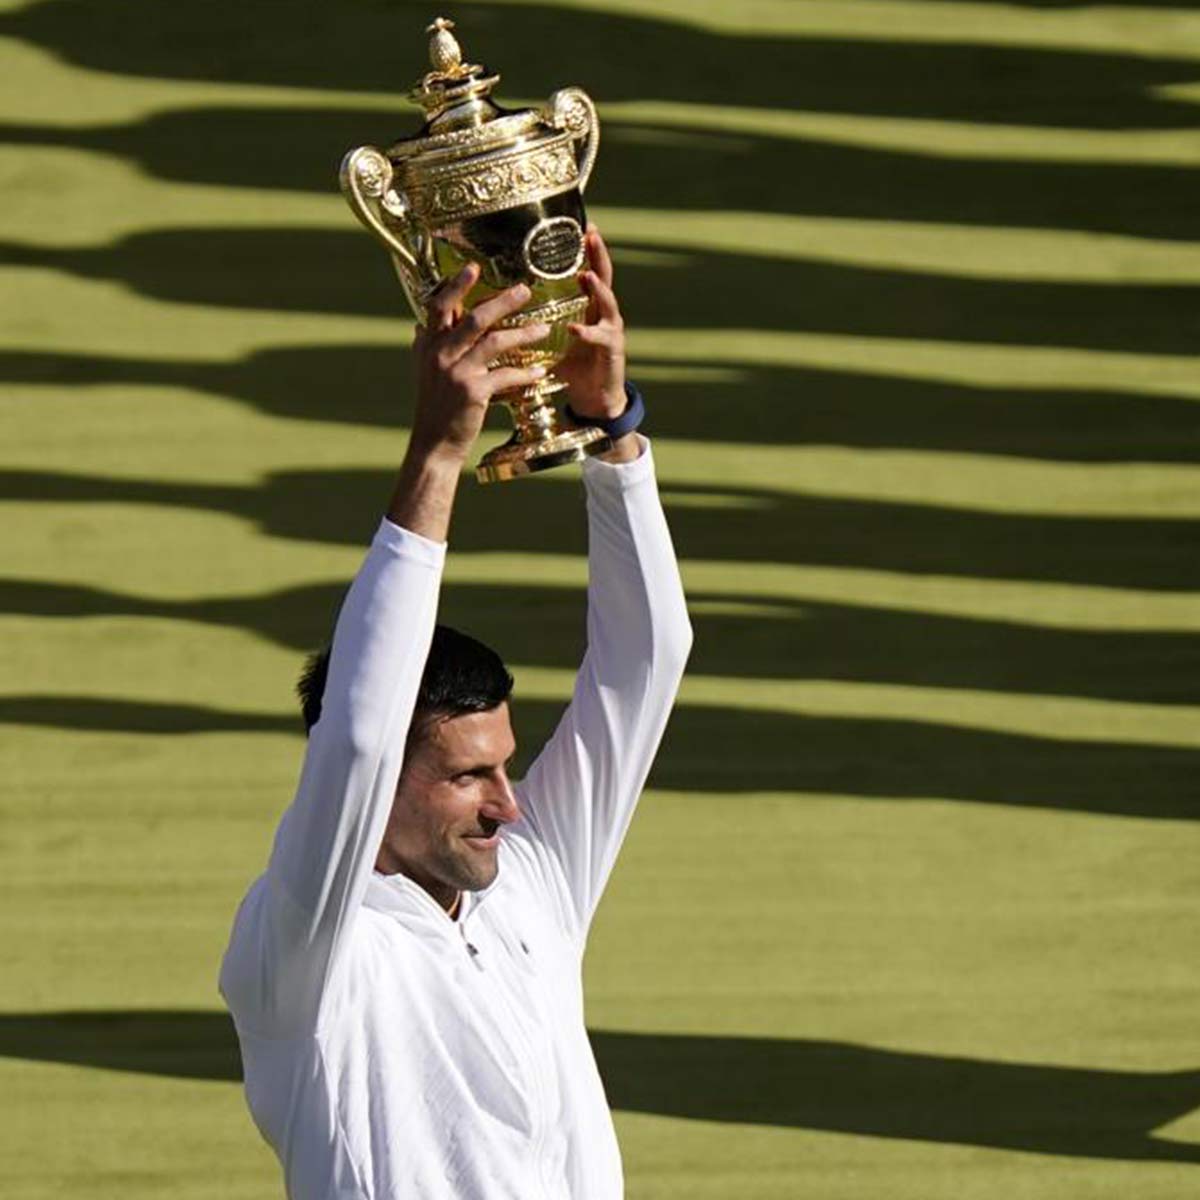 Esta es la cuarta victoria consecutiva de Djokovic en el Grand Slam inglés. / Foto: AP